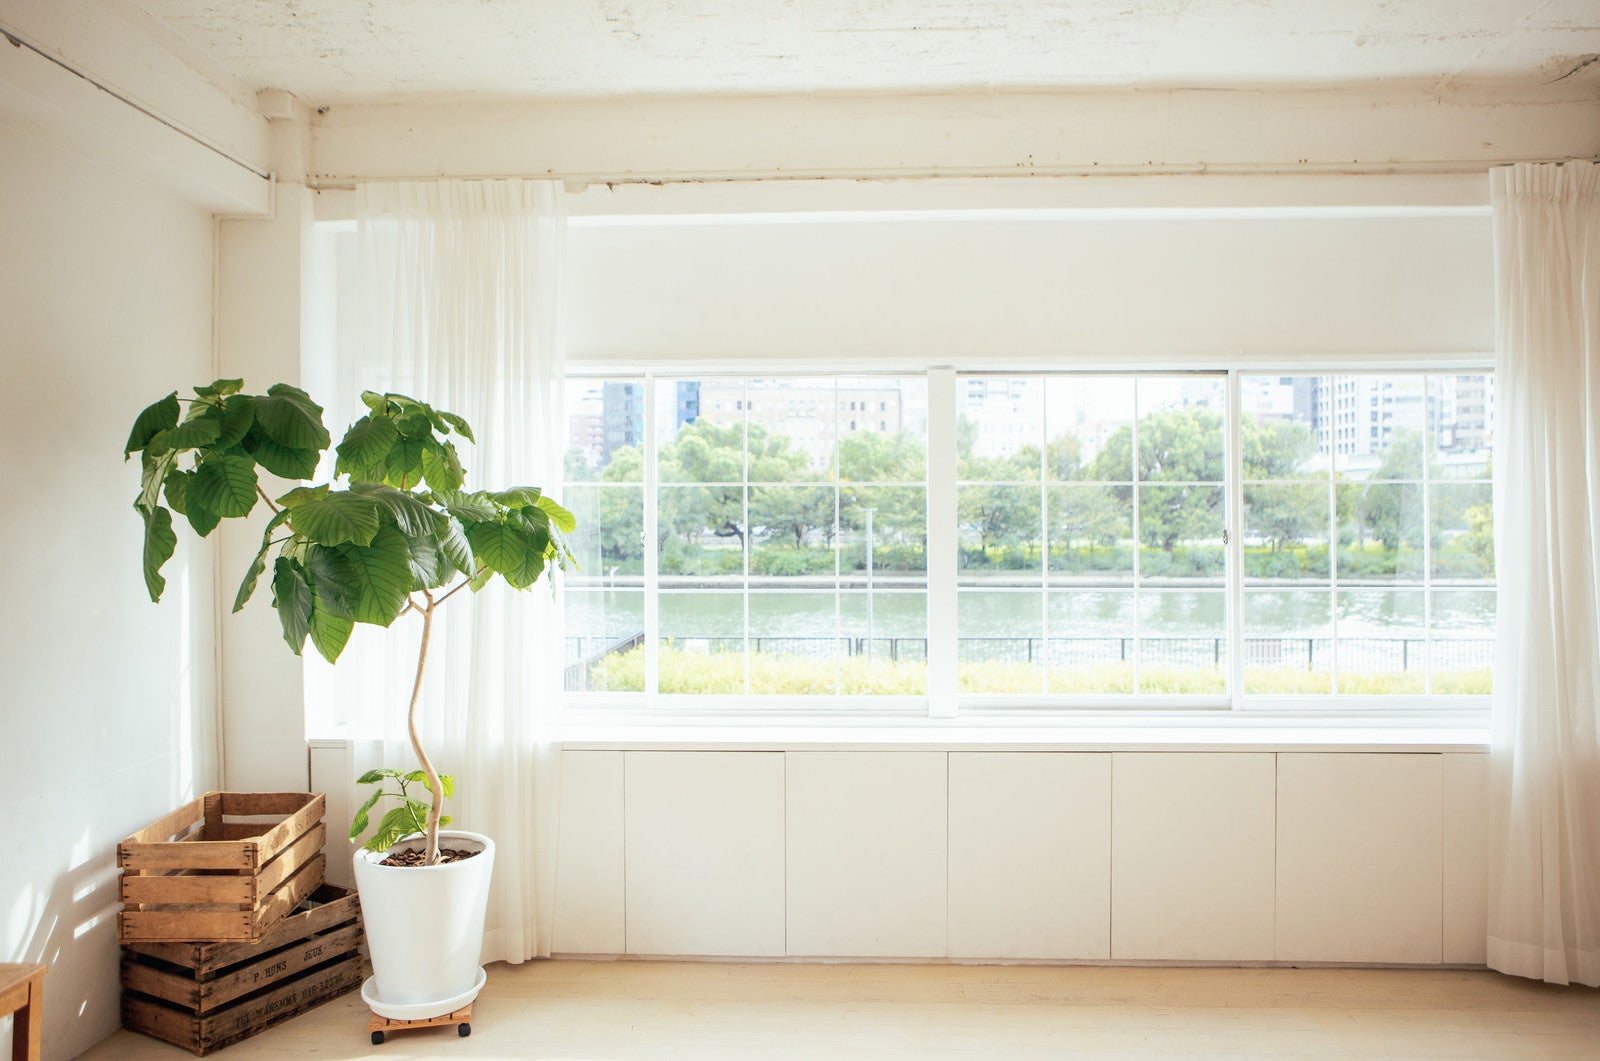 「窓から見える風景と観葉植物」の写真